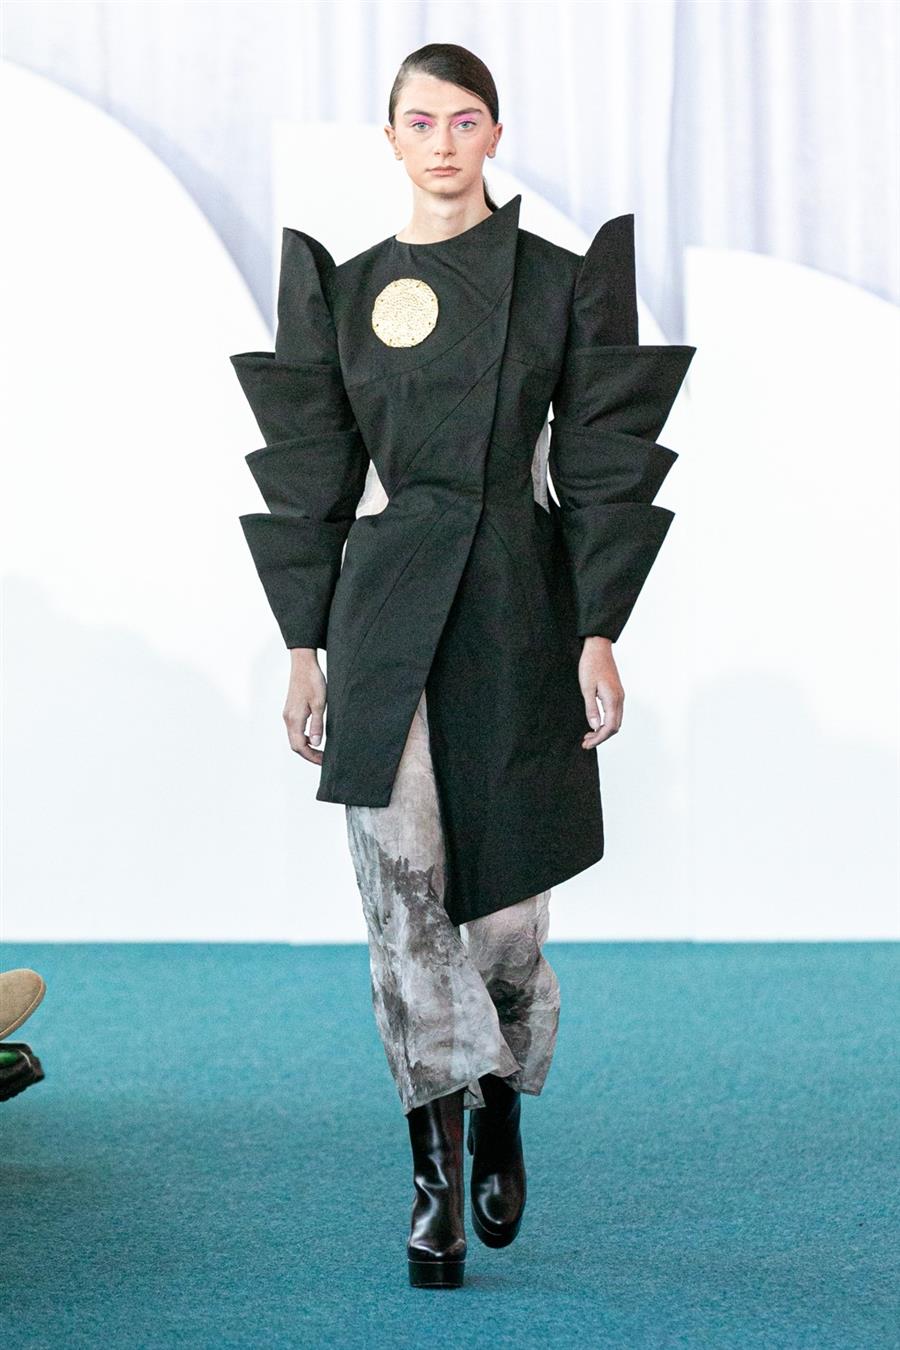 Fashion Arts
Up-and-coming Designer Award - Bella Cai